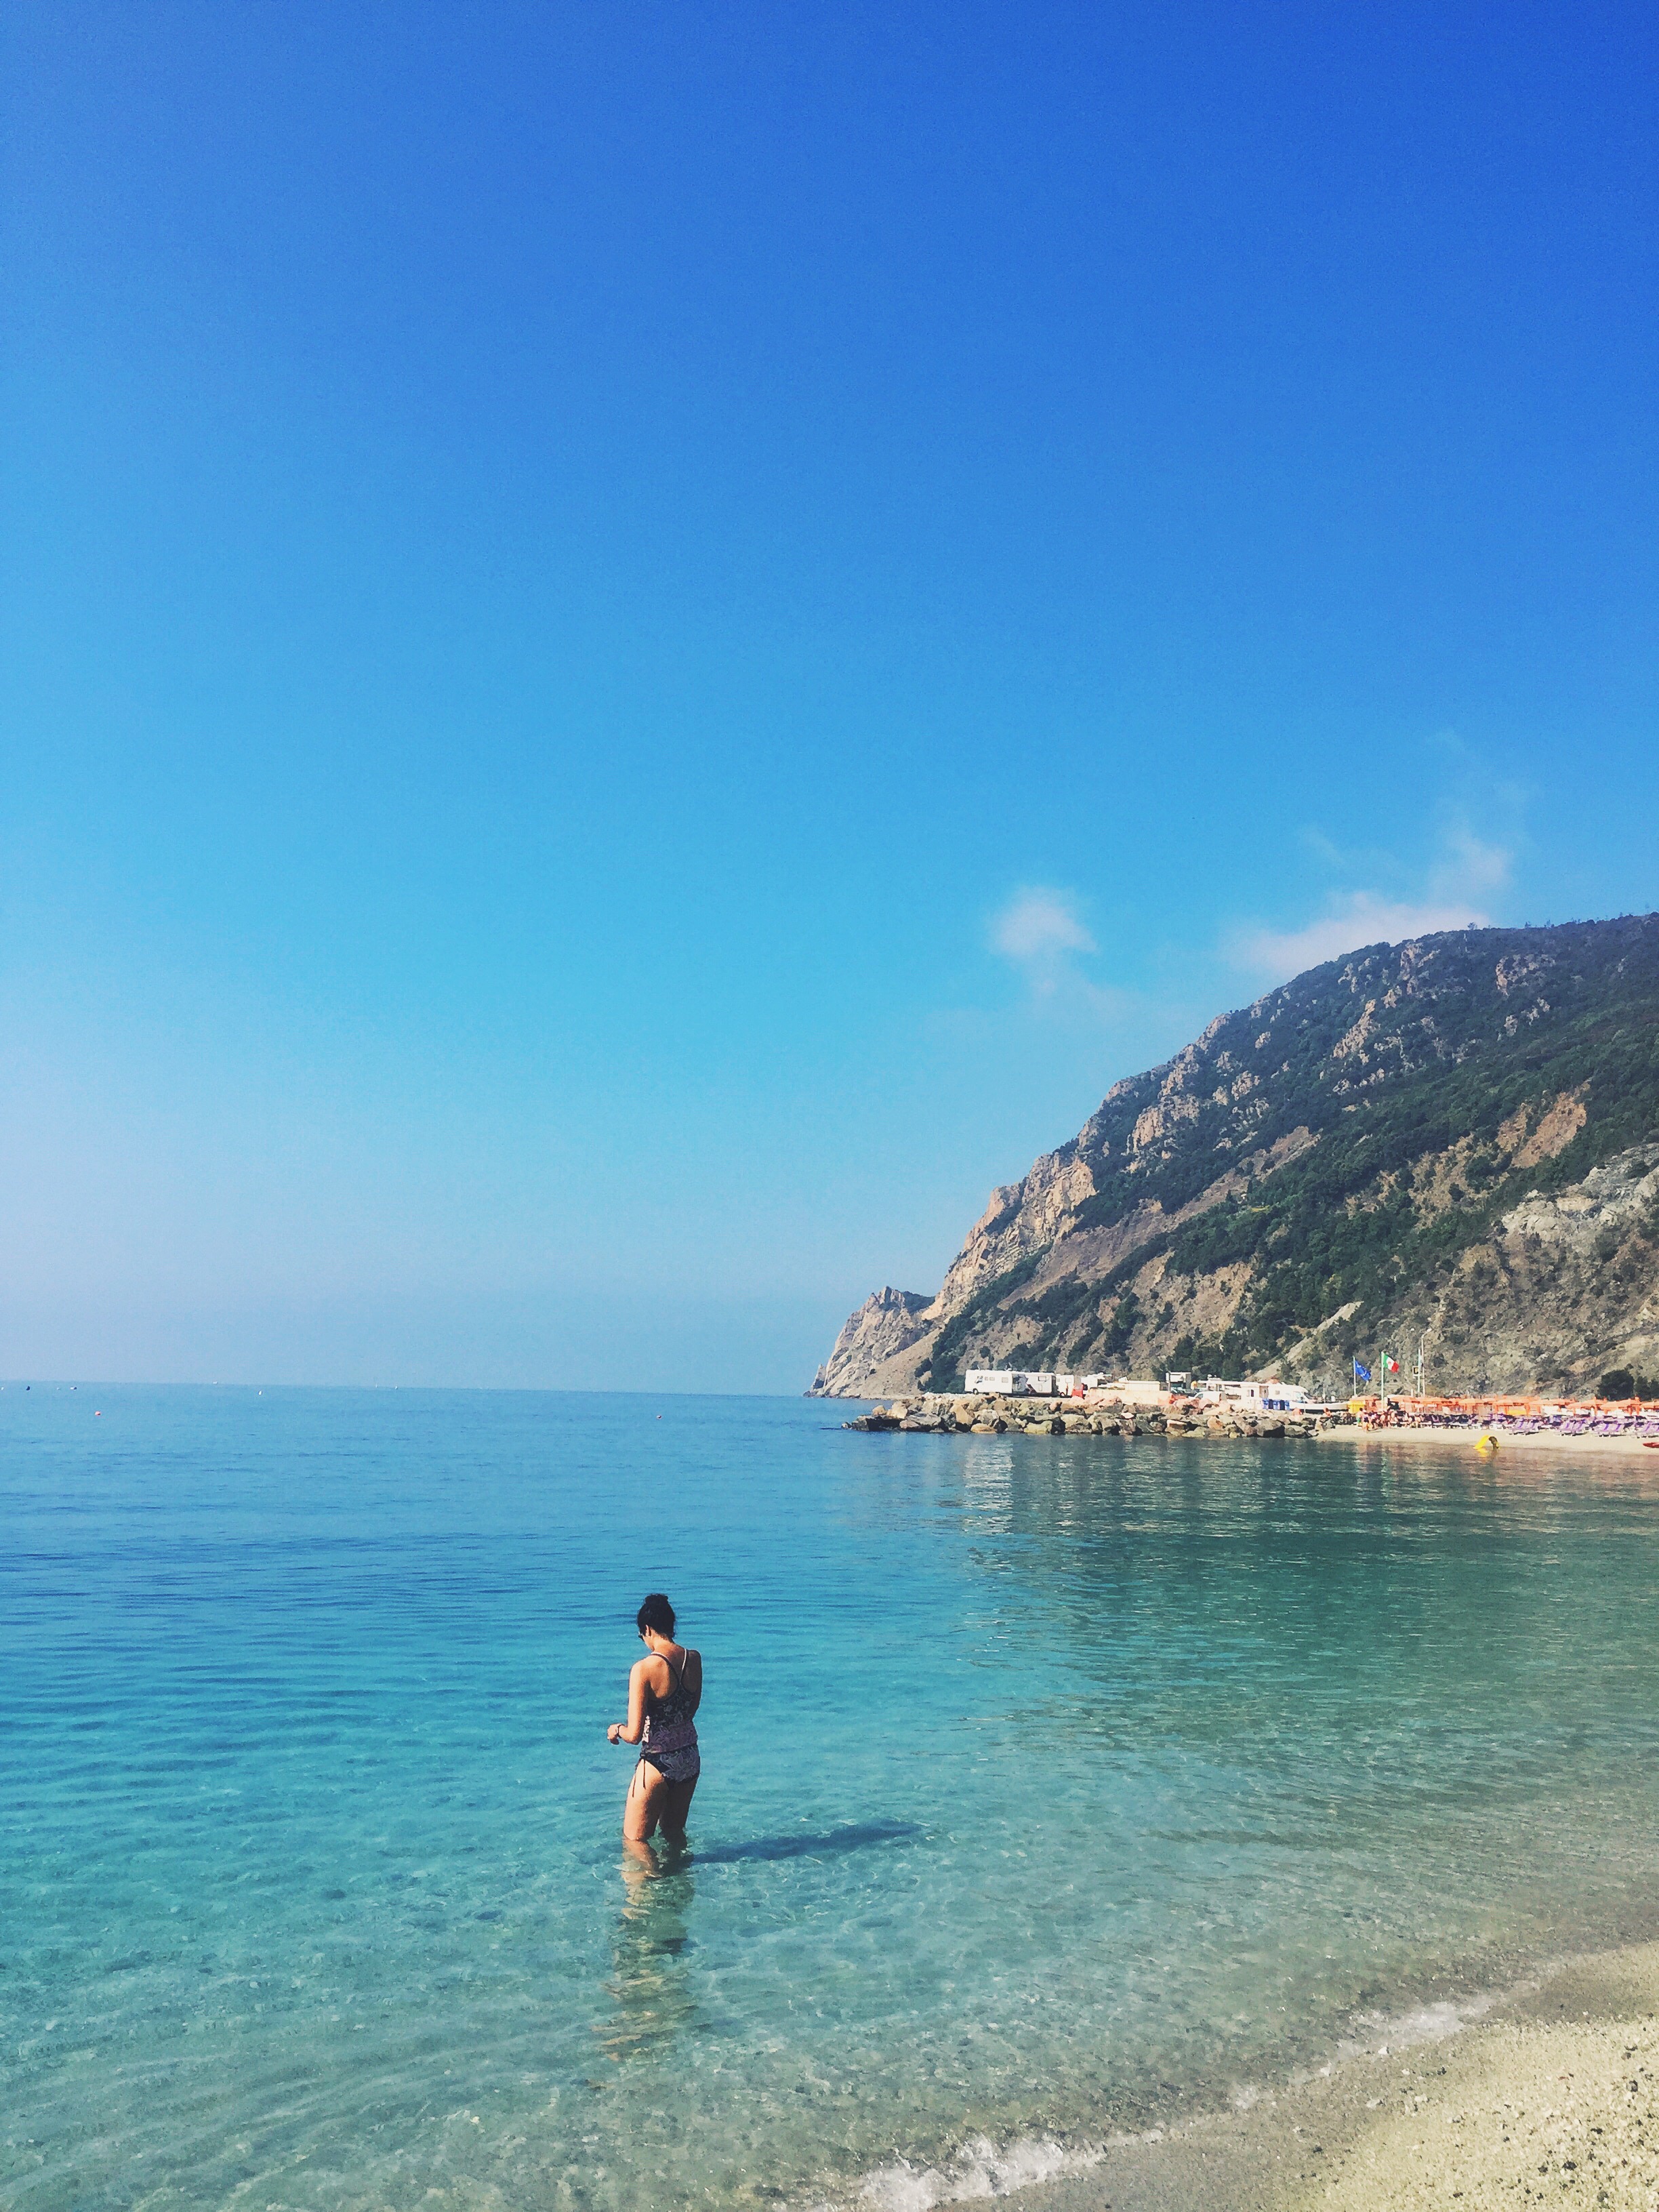   "Azure"&nbsp;   Monterosso al Mare || Cinque Terre, Italy ||&nbsp;June 2015 || iPhone 6 